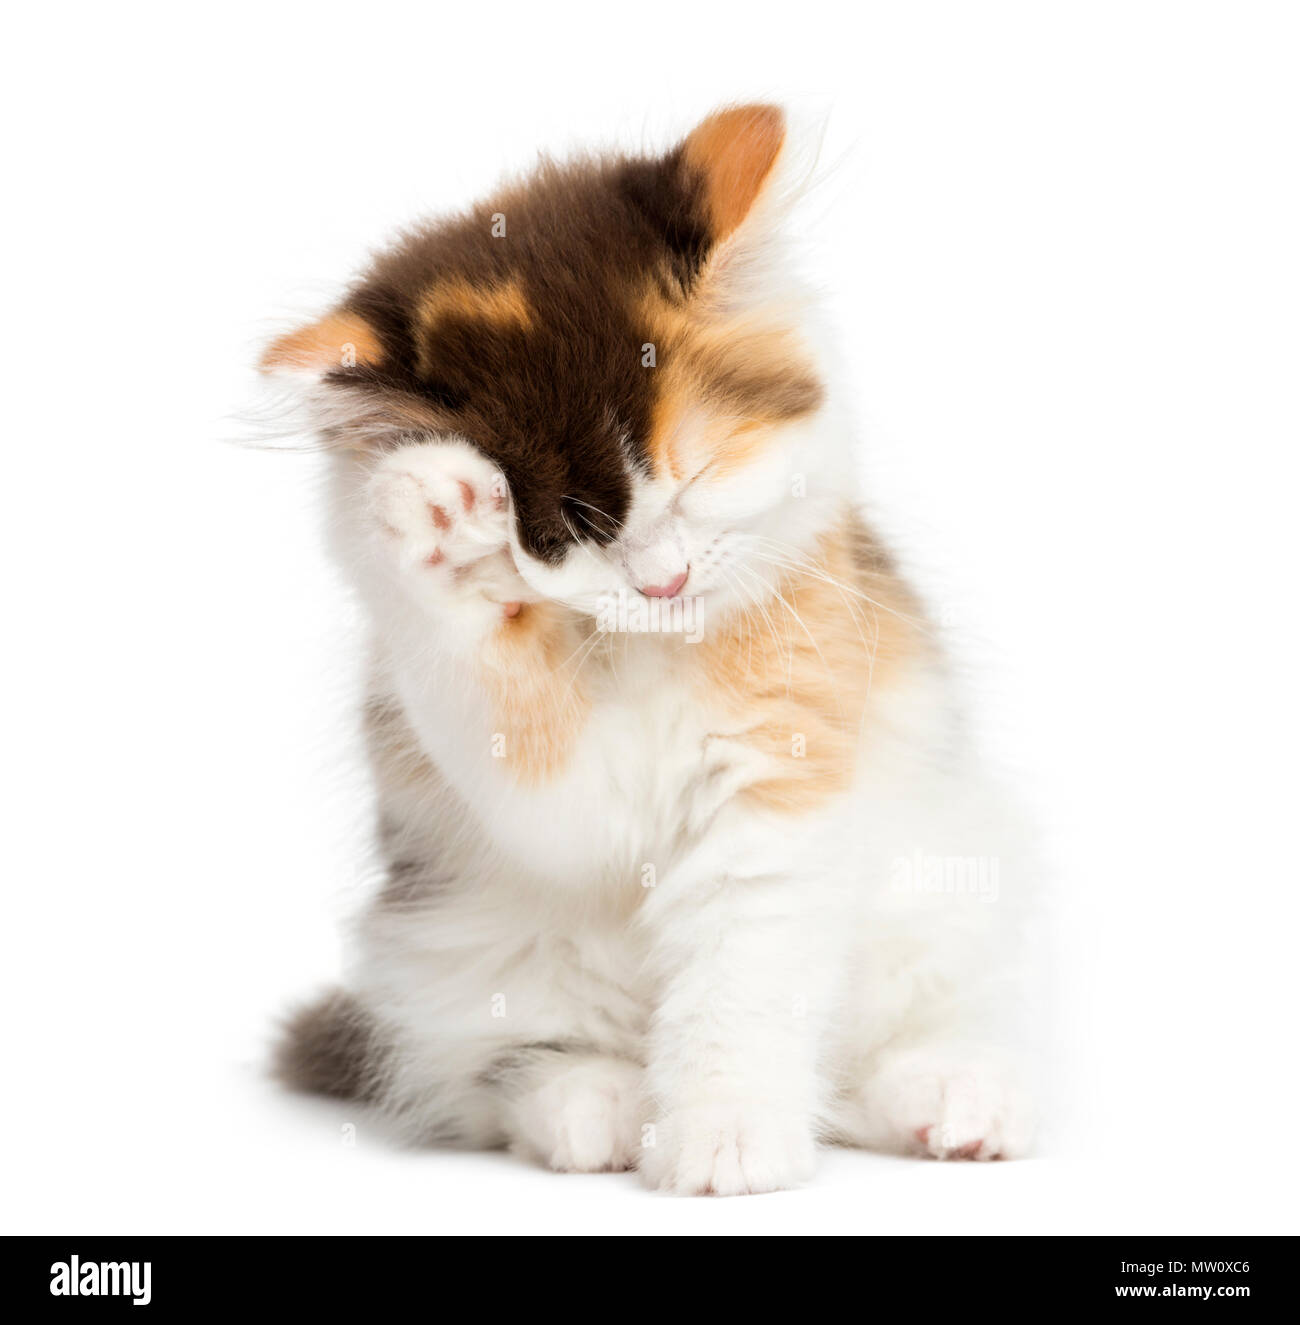 Recta Higland gatito sentado, tras un lavado, aislado en blanco Foto de stock